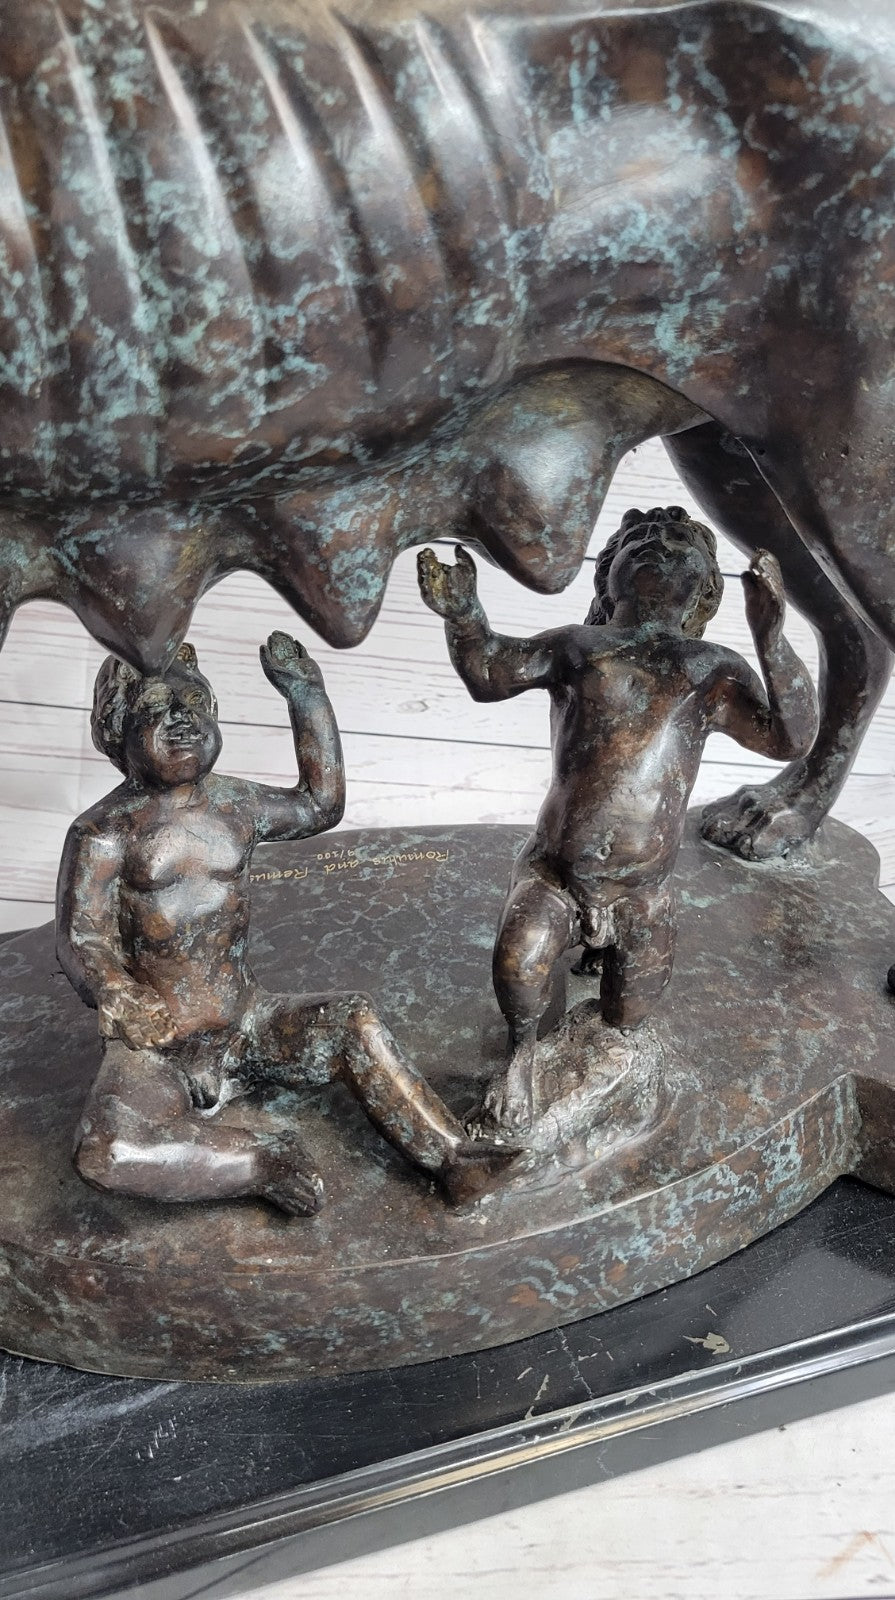 Shewolf Capitoline Bronze Sculpture On Original Marble Base Figurine Figure Sale